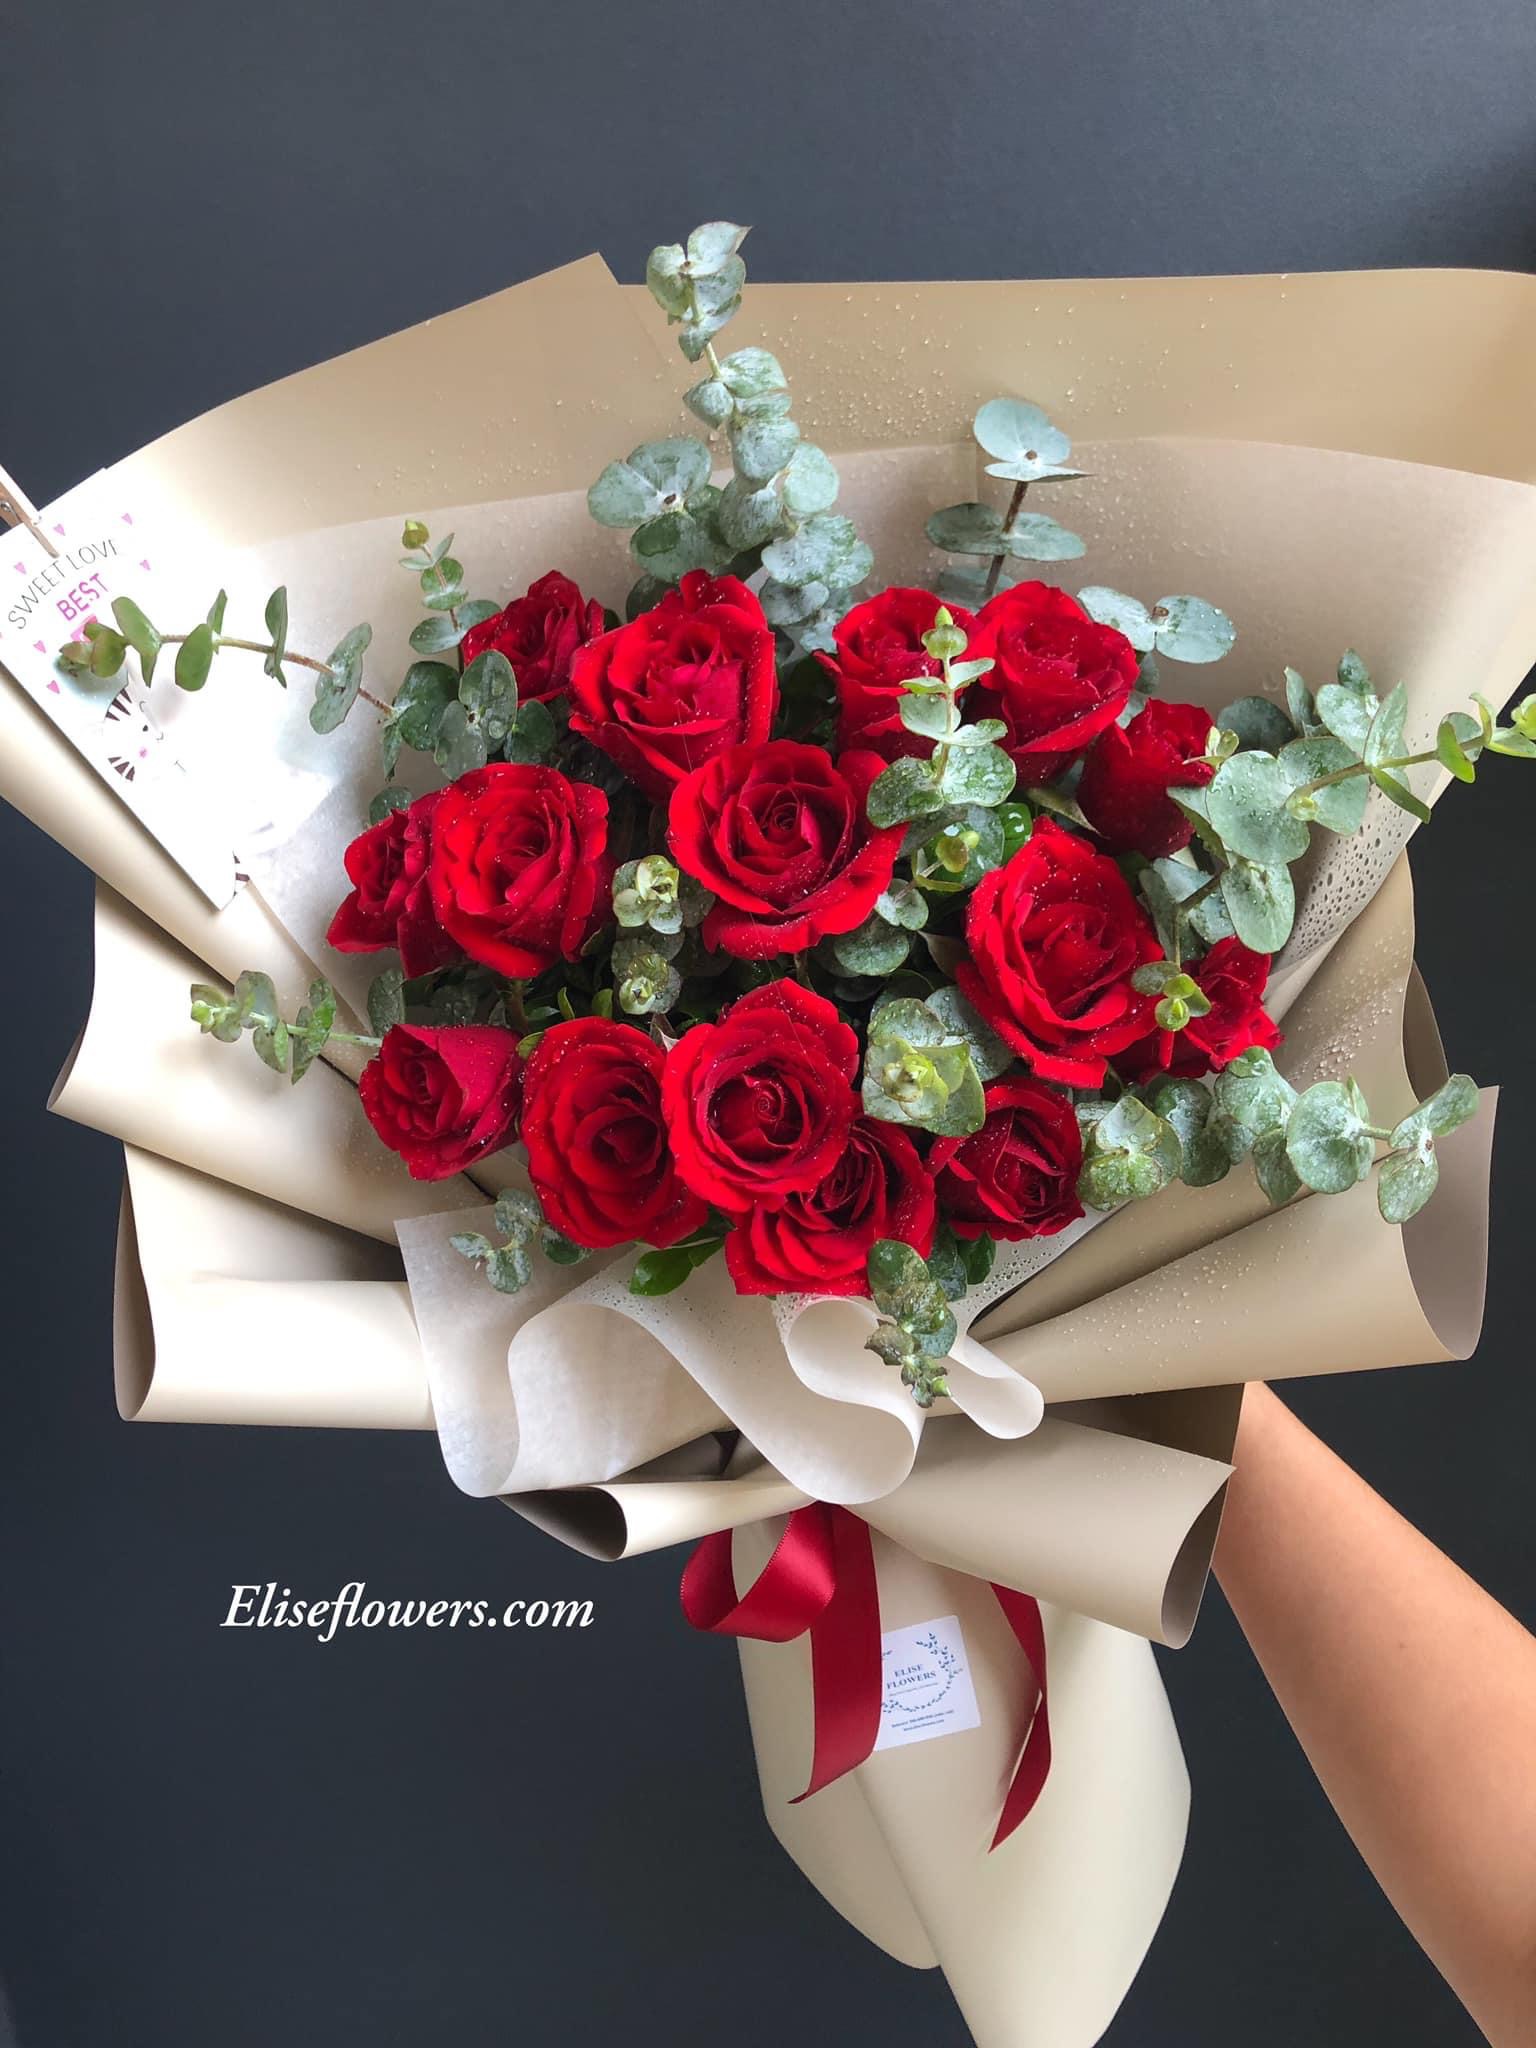 Bó hoa hồng đỏ dành tặng sinh nhật người yêu đẹp và ý nghĩa